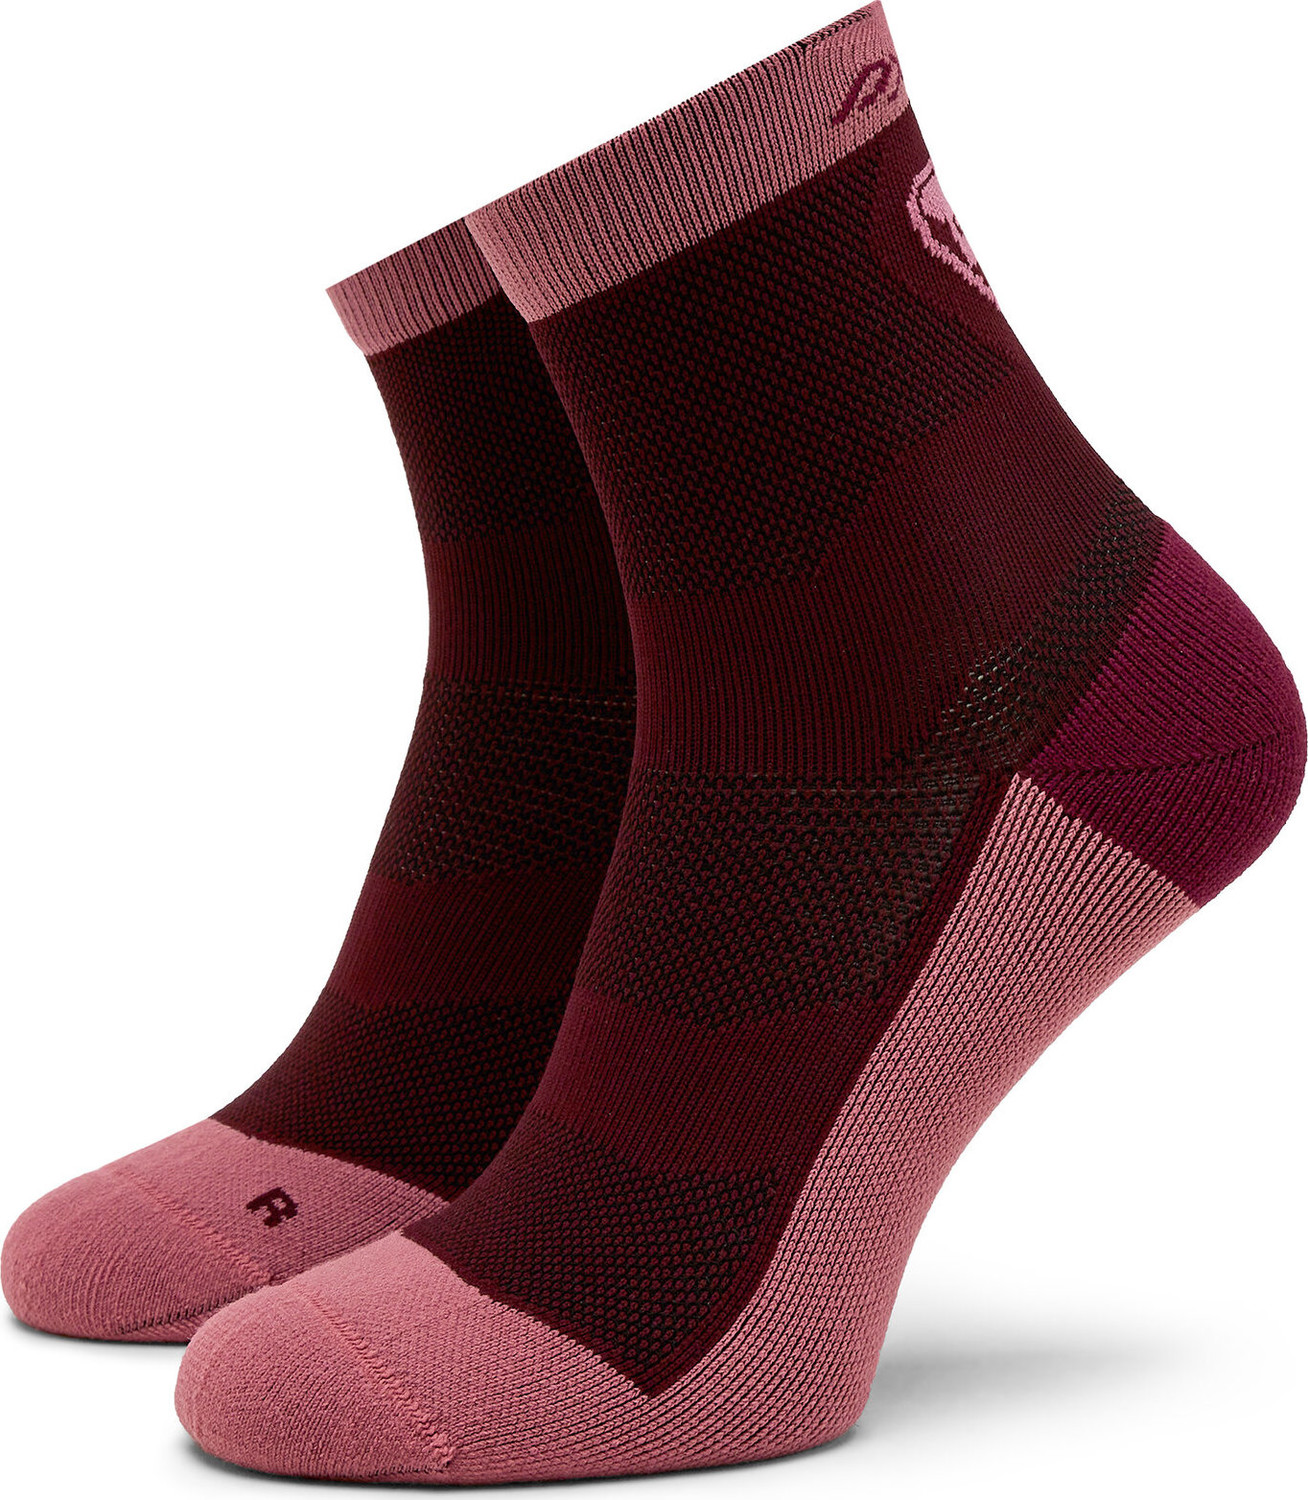 Dámské klasické ponožky Dynafit Transalper 6561 Burgundy 6561